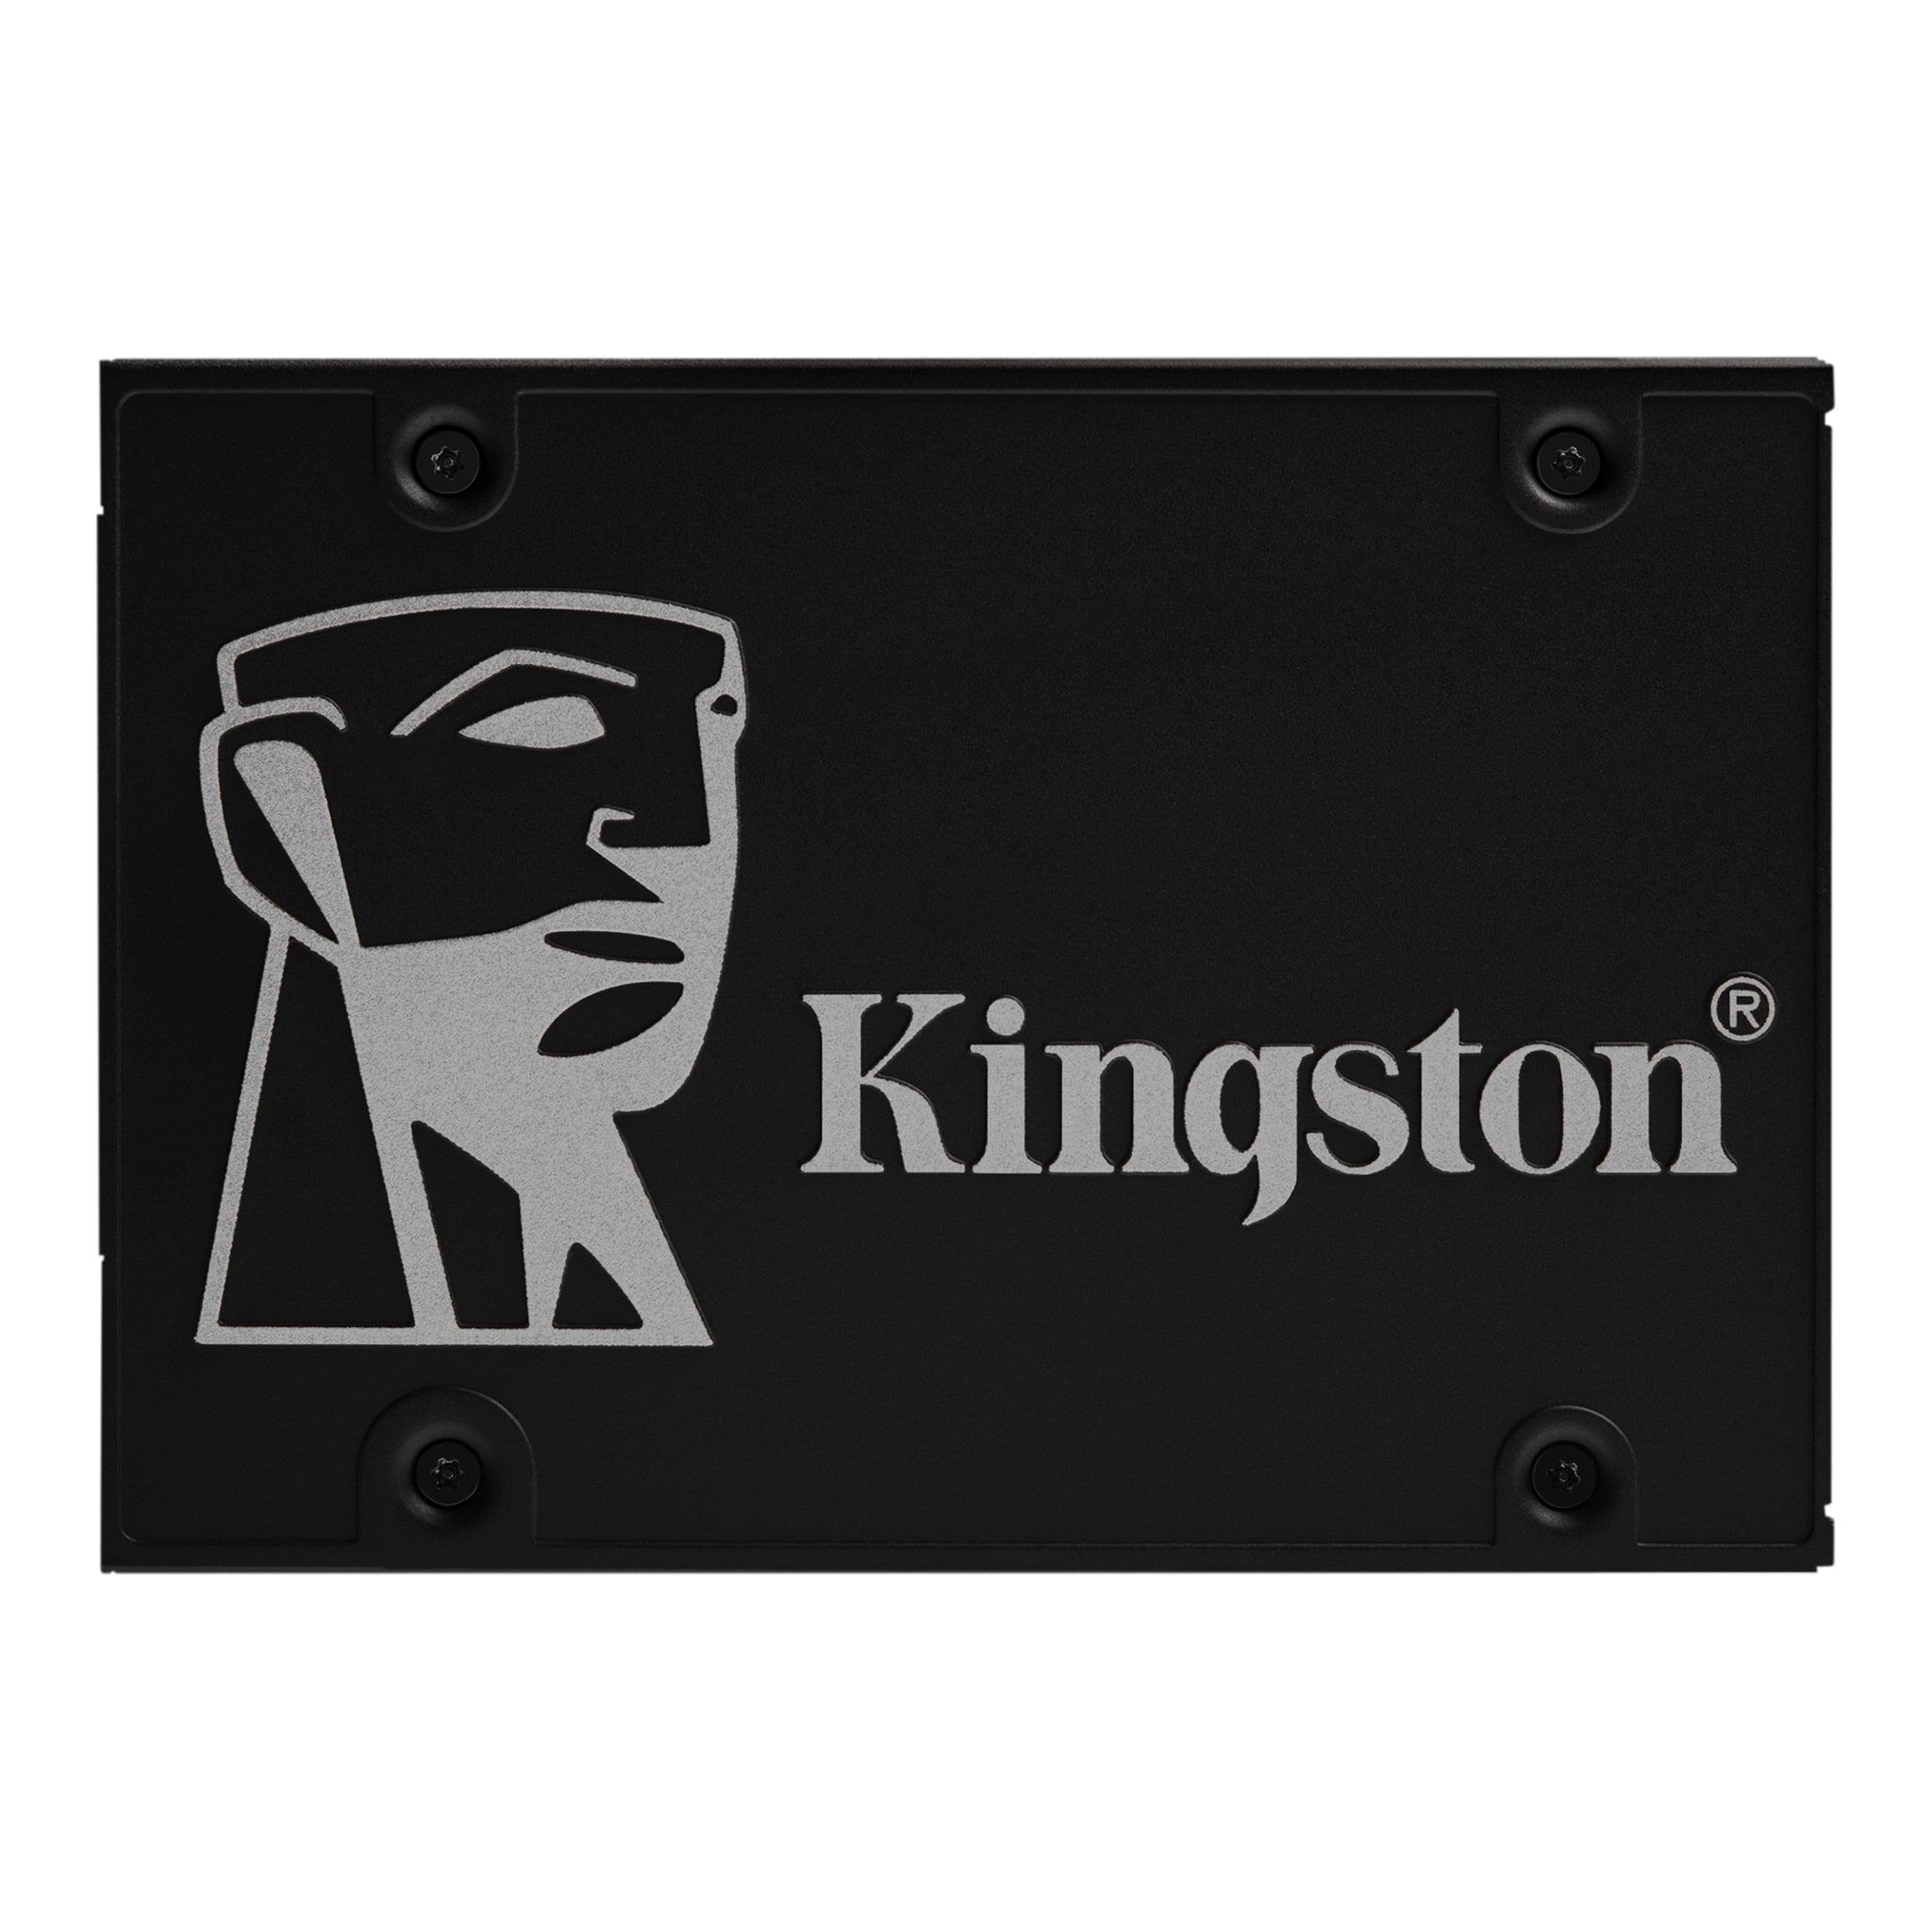 Kingston - Kc600 2.5" Ssd Harddisk - 256 Gb